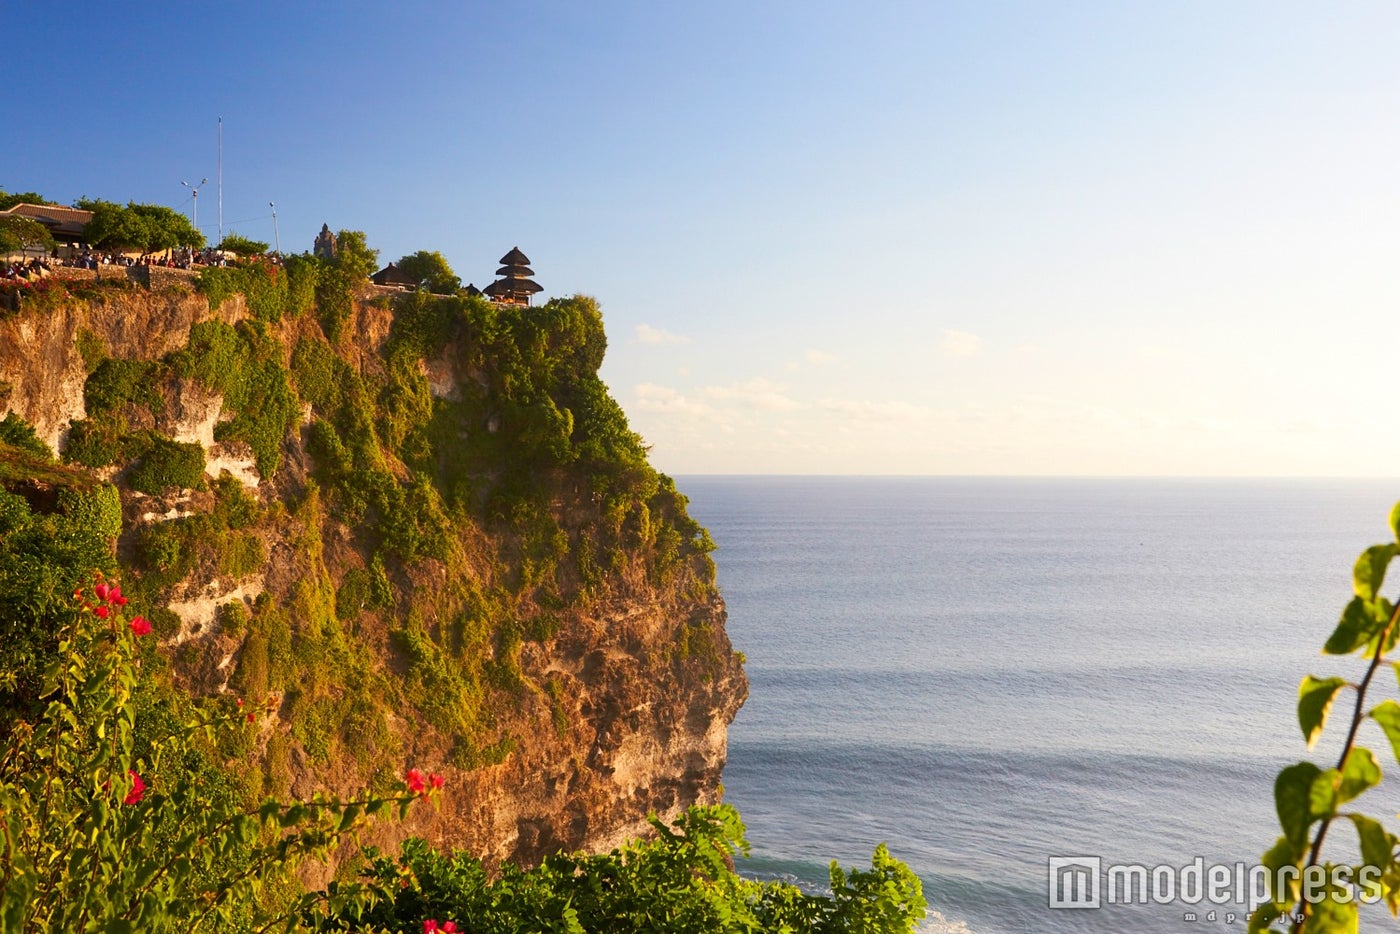 崖の上にぽつんと佇むバリ島の6大寺院の1つ、ウルワツ寺院